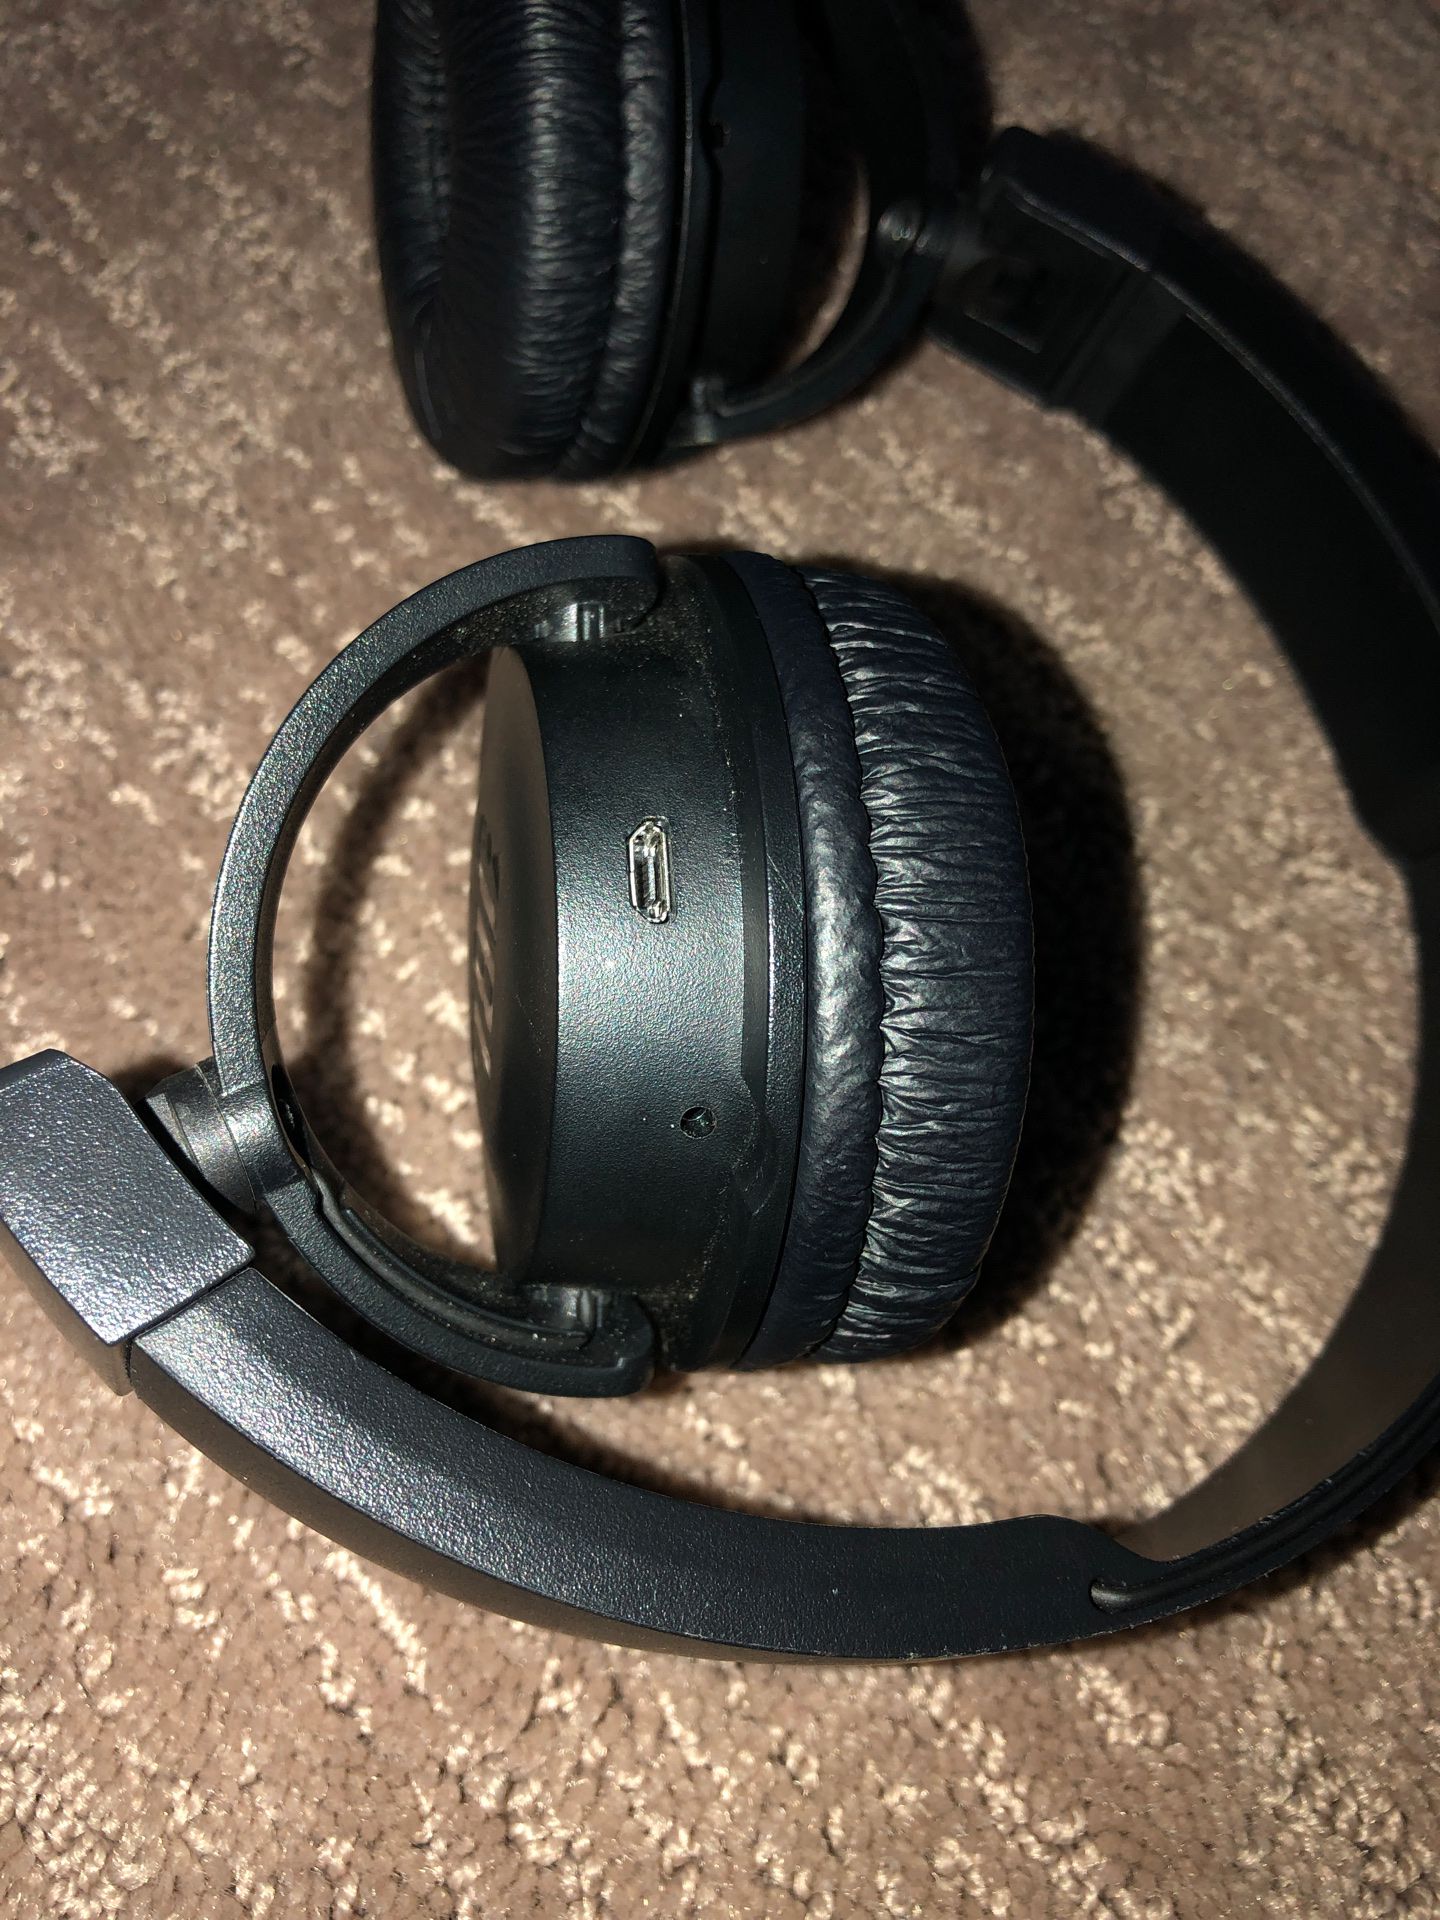 JBL On-Ear Wireless headphones (READ)